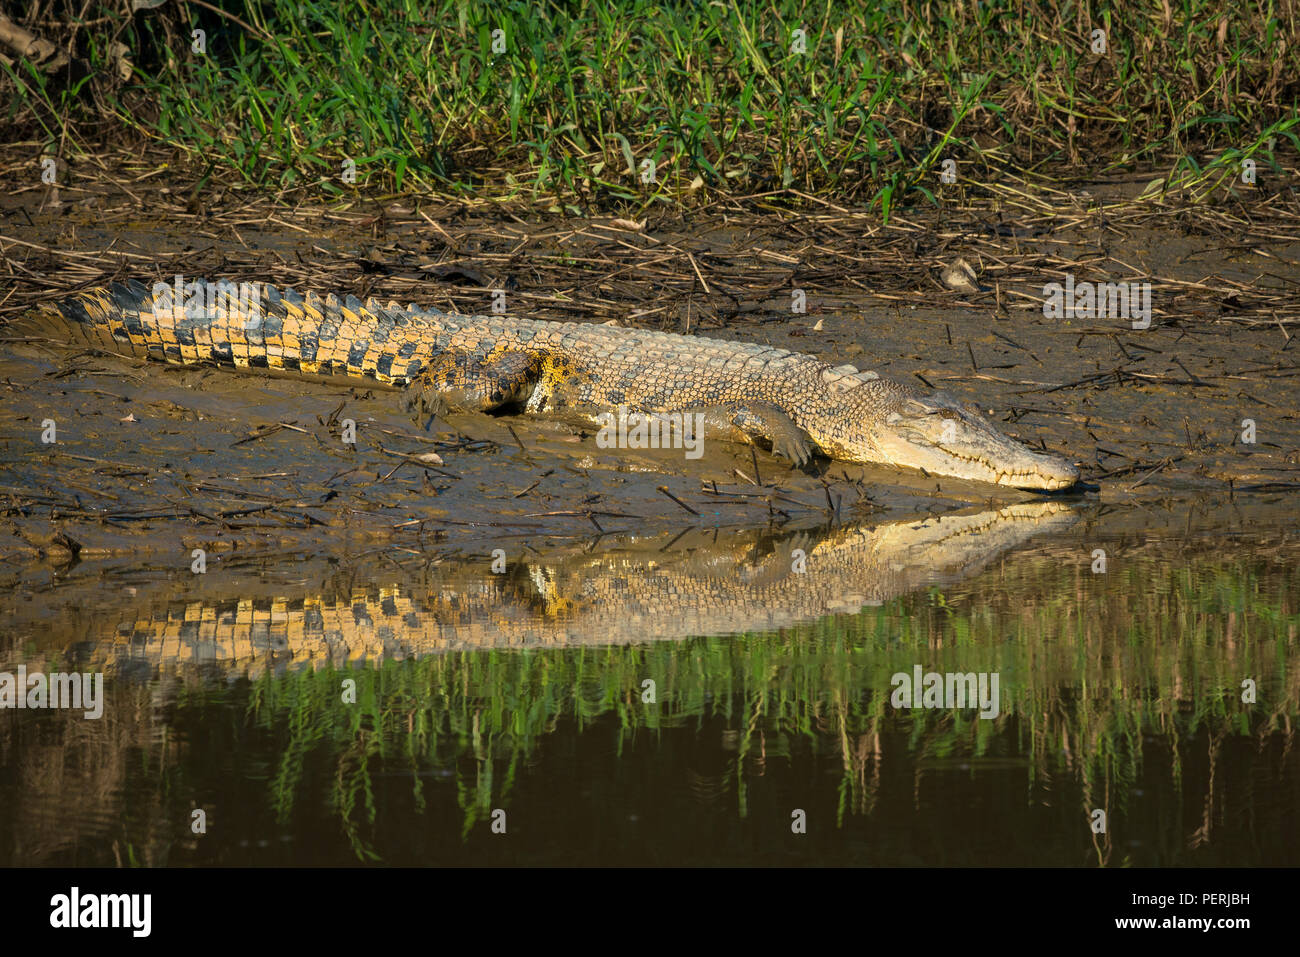 Salzwasser Krokodil (Crocodylus porosus) ruht auf einem Schlamm Ufer, und seine Reflexion sichtbar auf der Wasseroberfläche. Kinabatangan Fluss, Borneo. Stockfoto